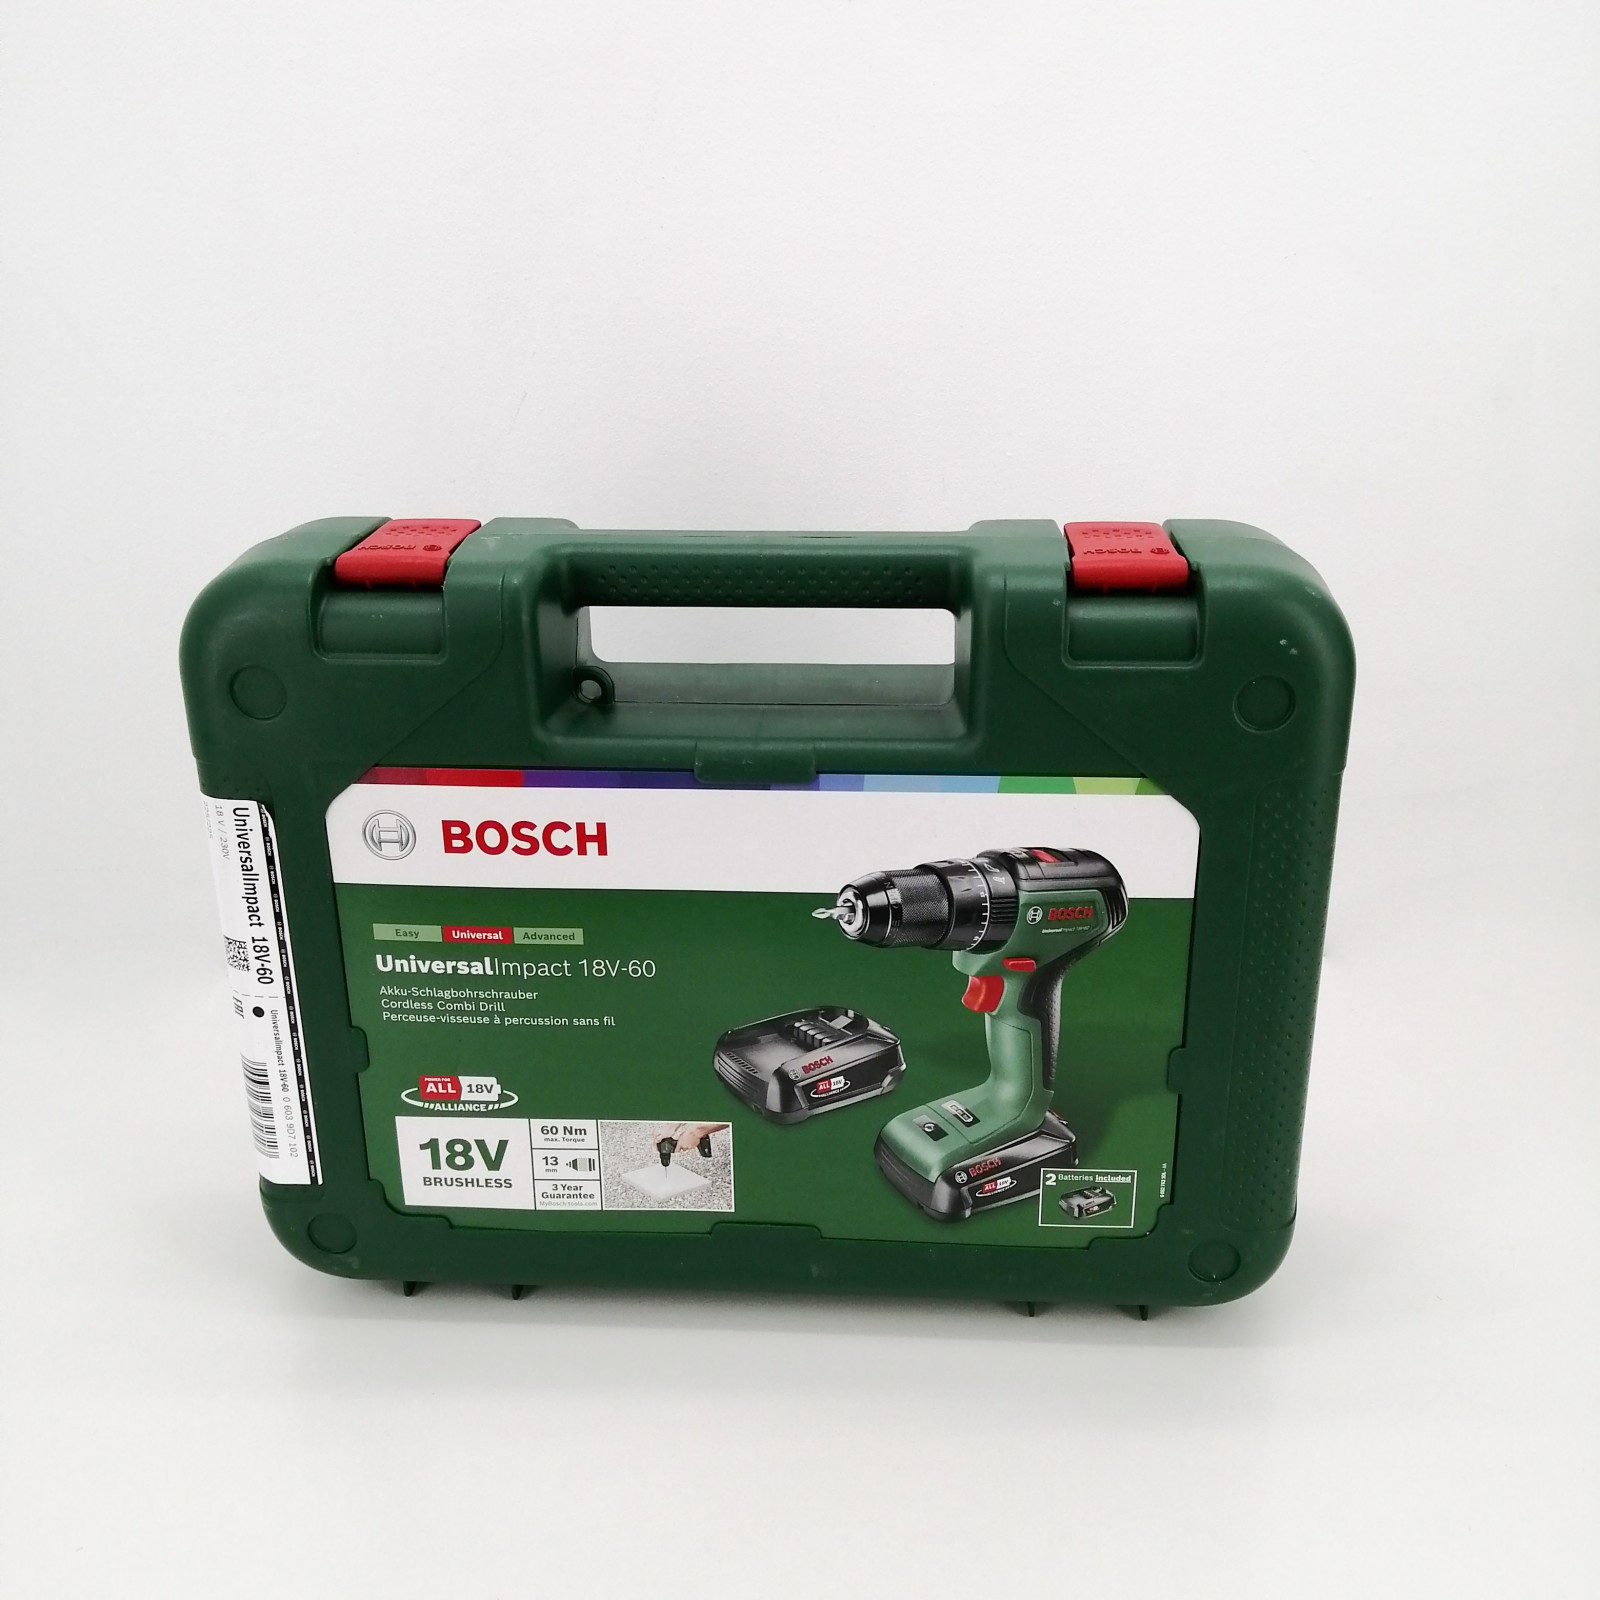 Taladro percutor a batería Bosch UniversalImpact 18V-60 (1 batería de 2,0  Ah) »